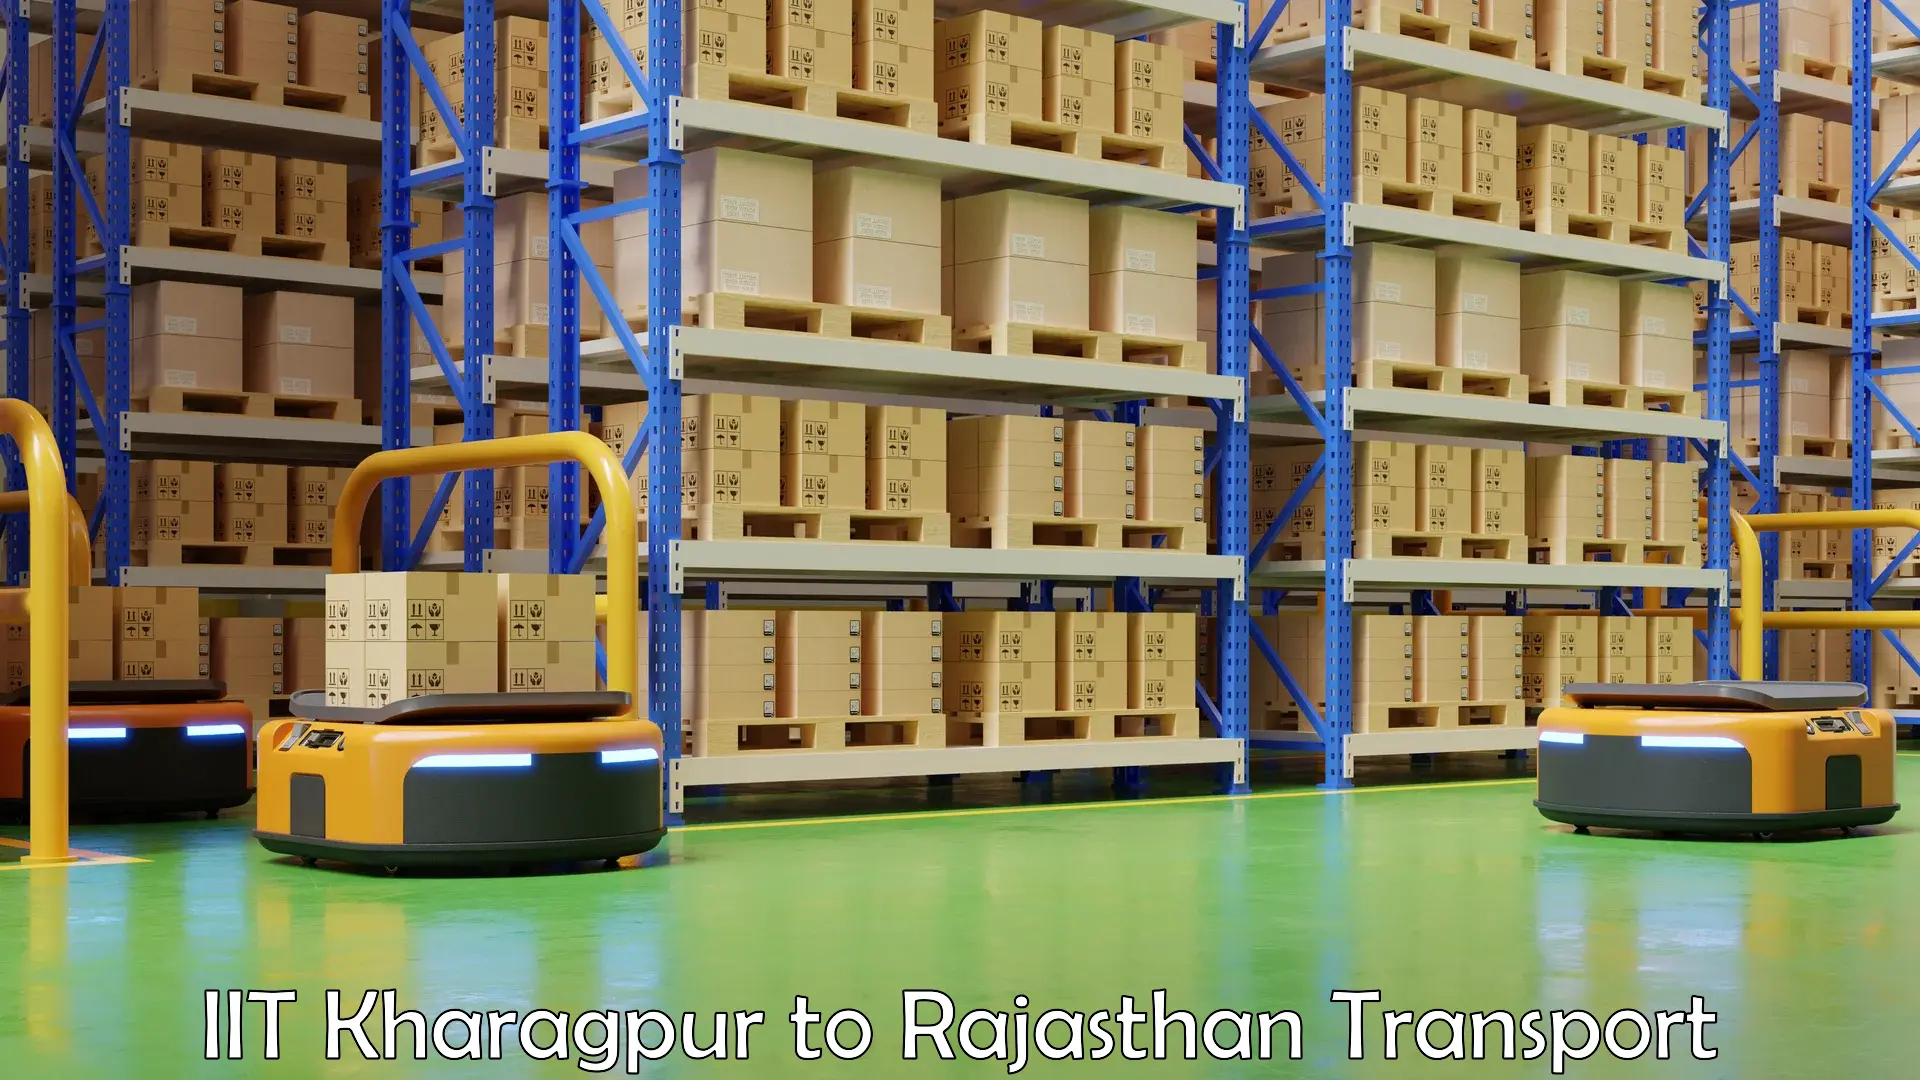 Cargo transport services in IIT Kharagpur to Bijainagar